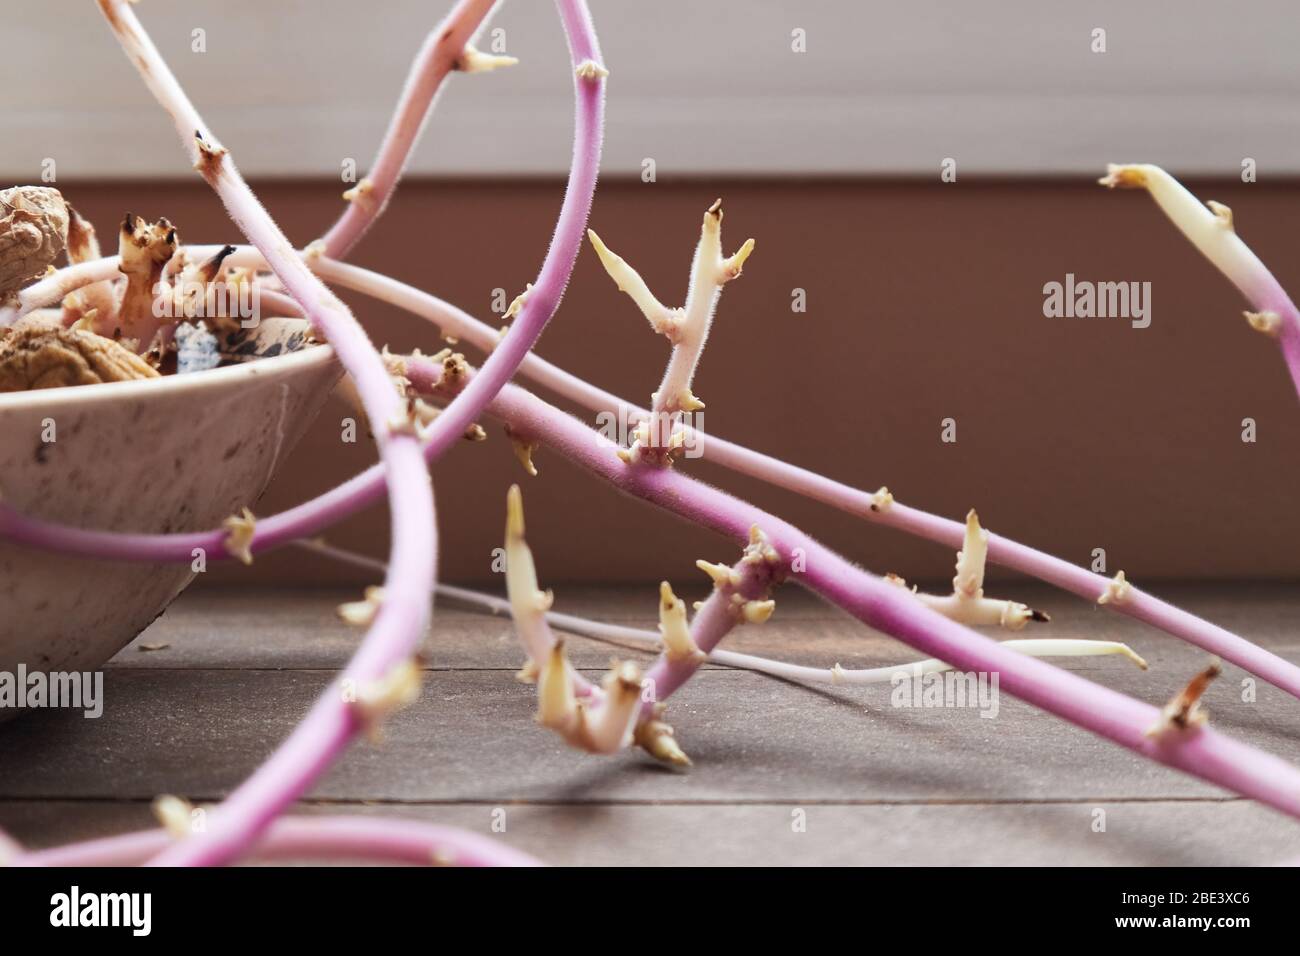 Schüssel mit geschrumpften Kartoffeln und Ingwer, die lange rosa Triebe wachsen Stockfoto